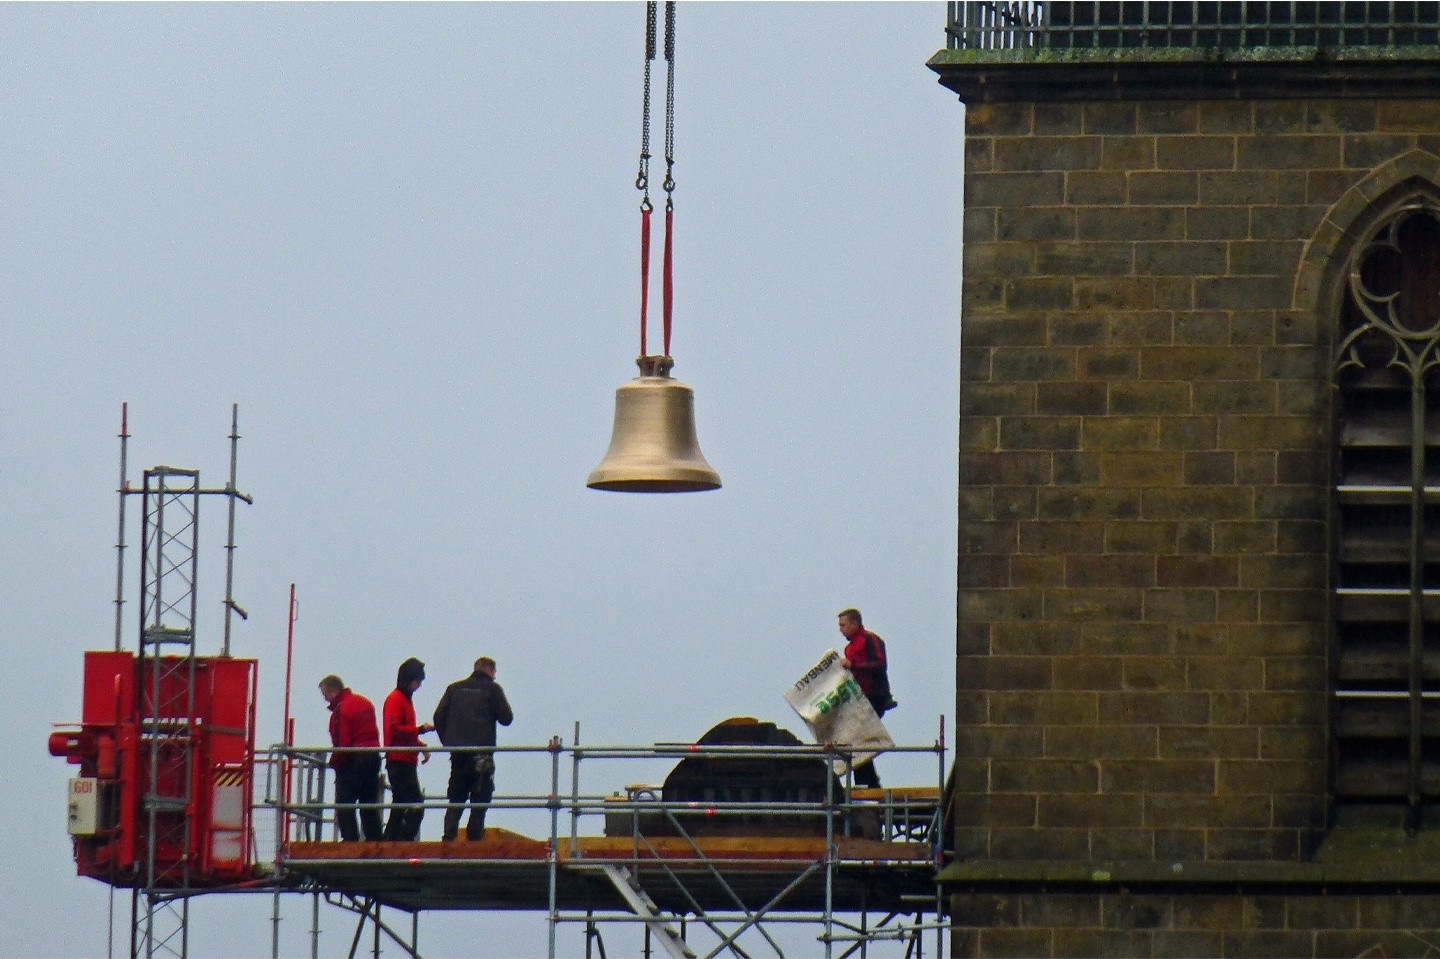 Glockenstuhlaufbau und Einbringung der Glocken von St. Peter und Paul